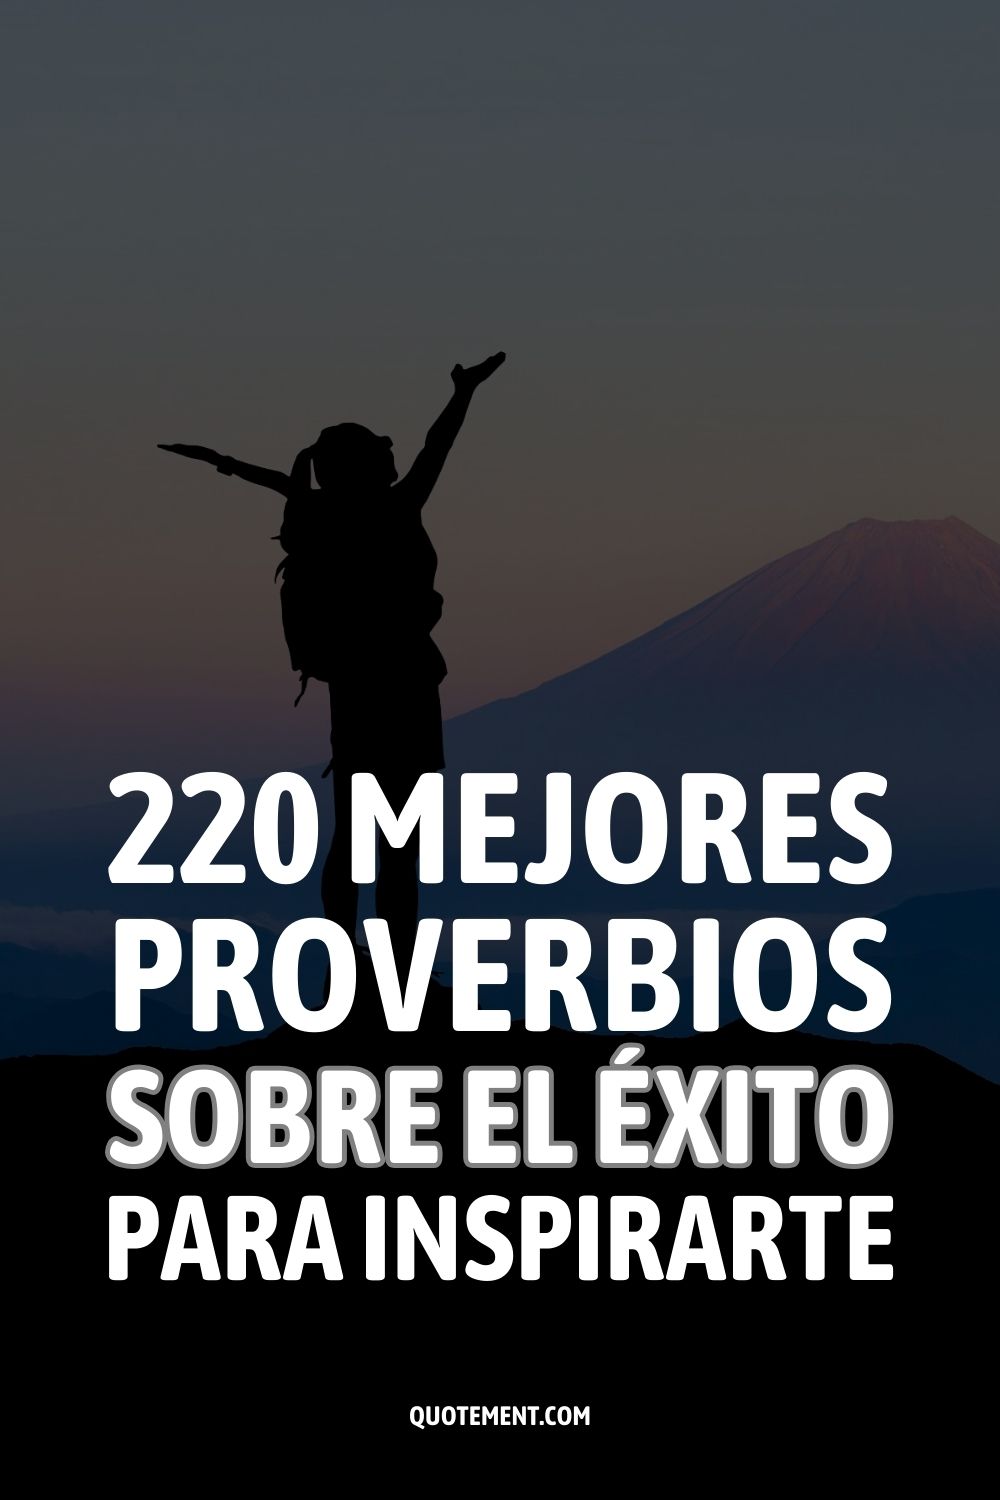 220 mejores proverbios sobre el éxito para inspirarte